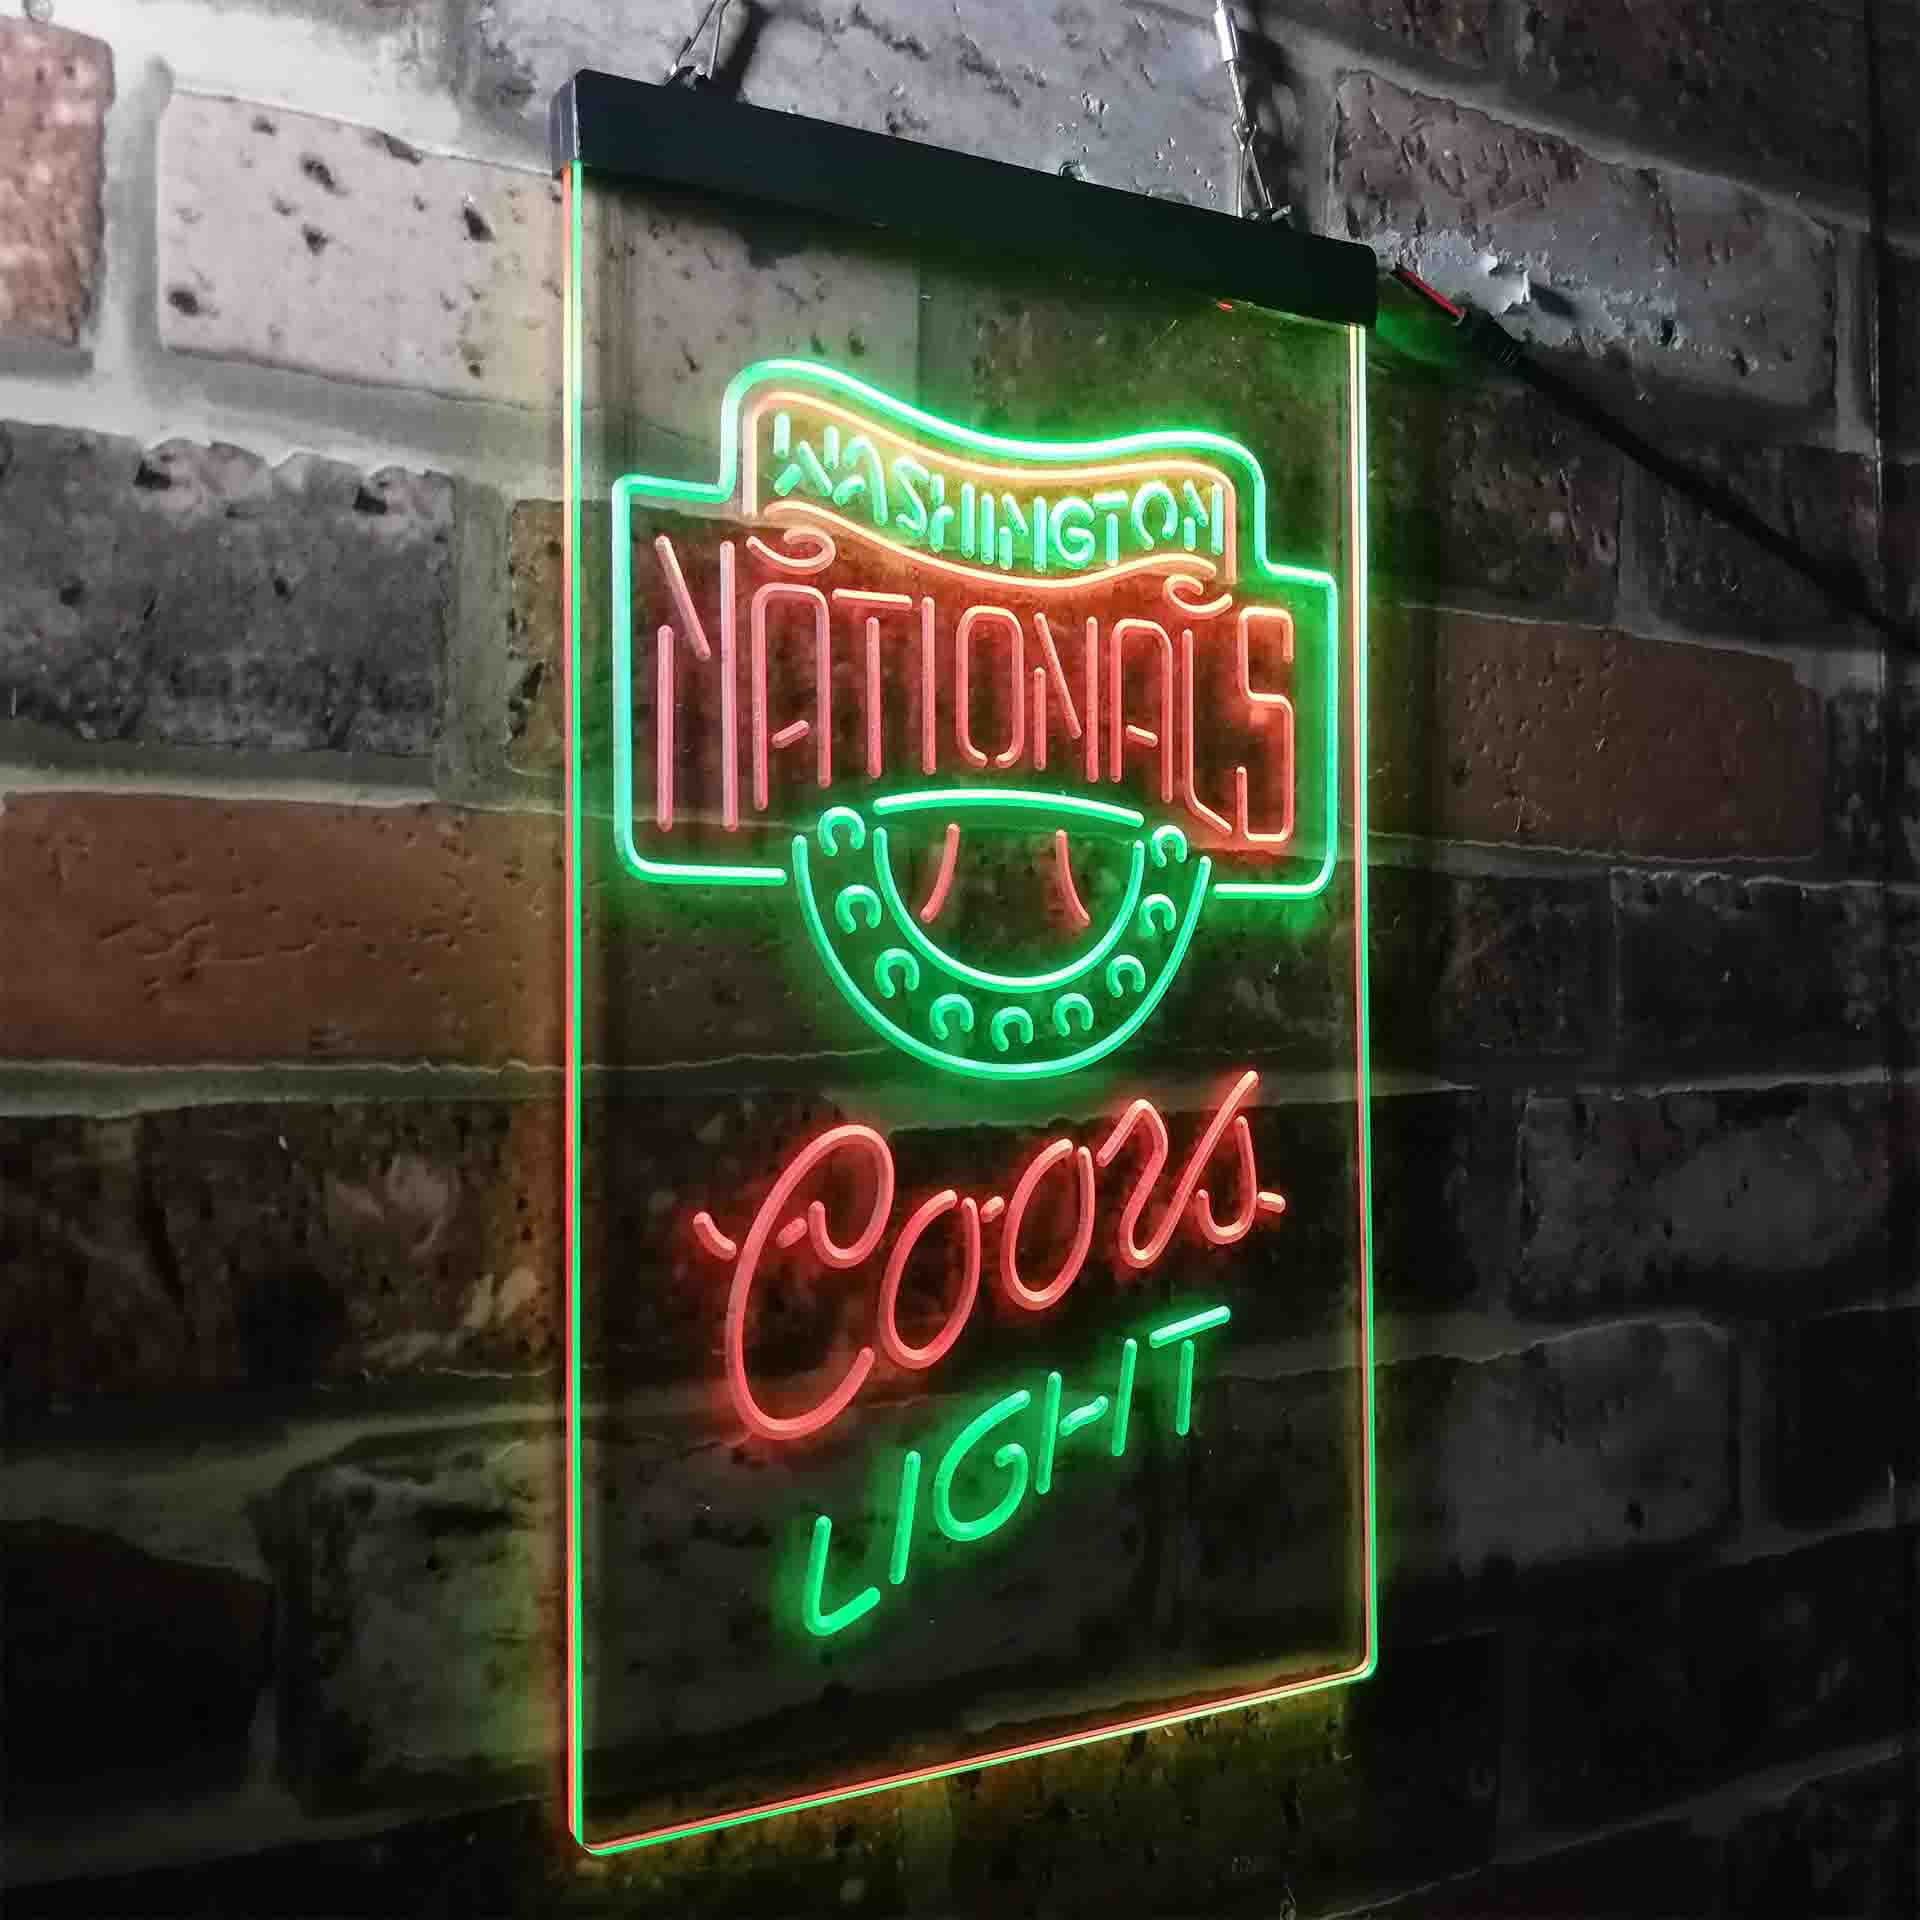 Washington Nationals LED Neon Sign